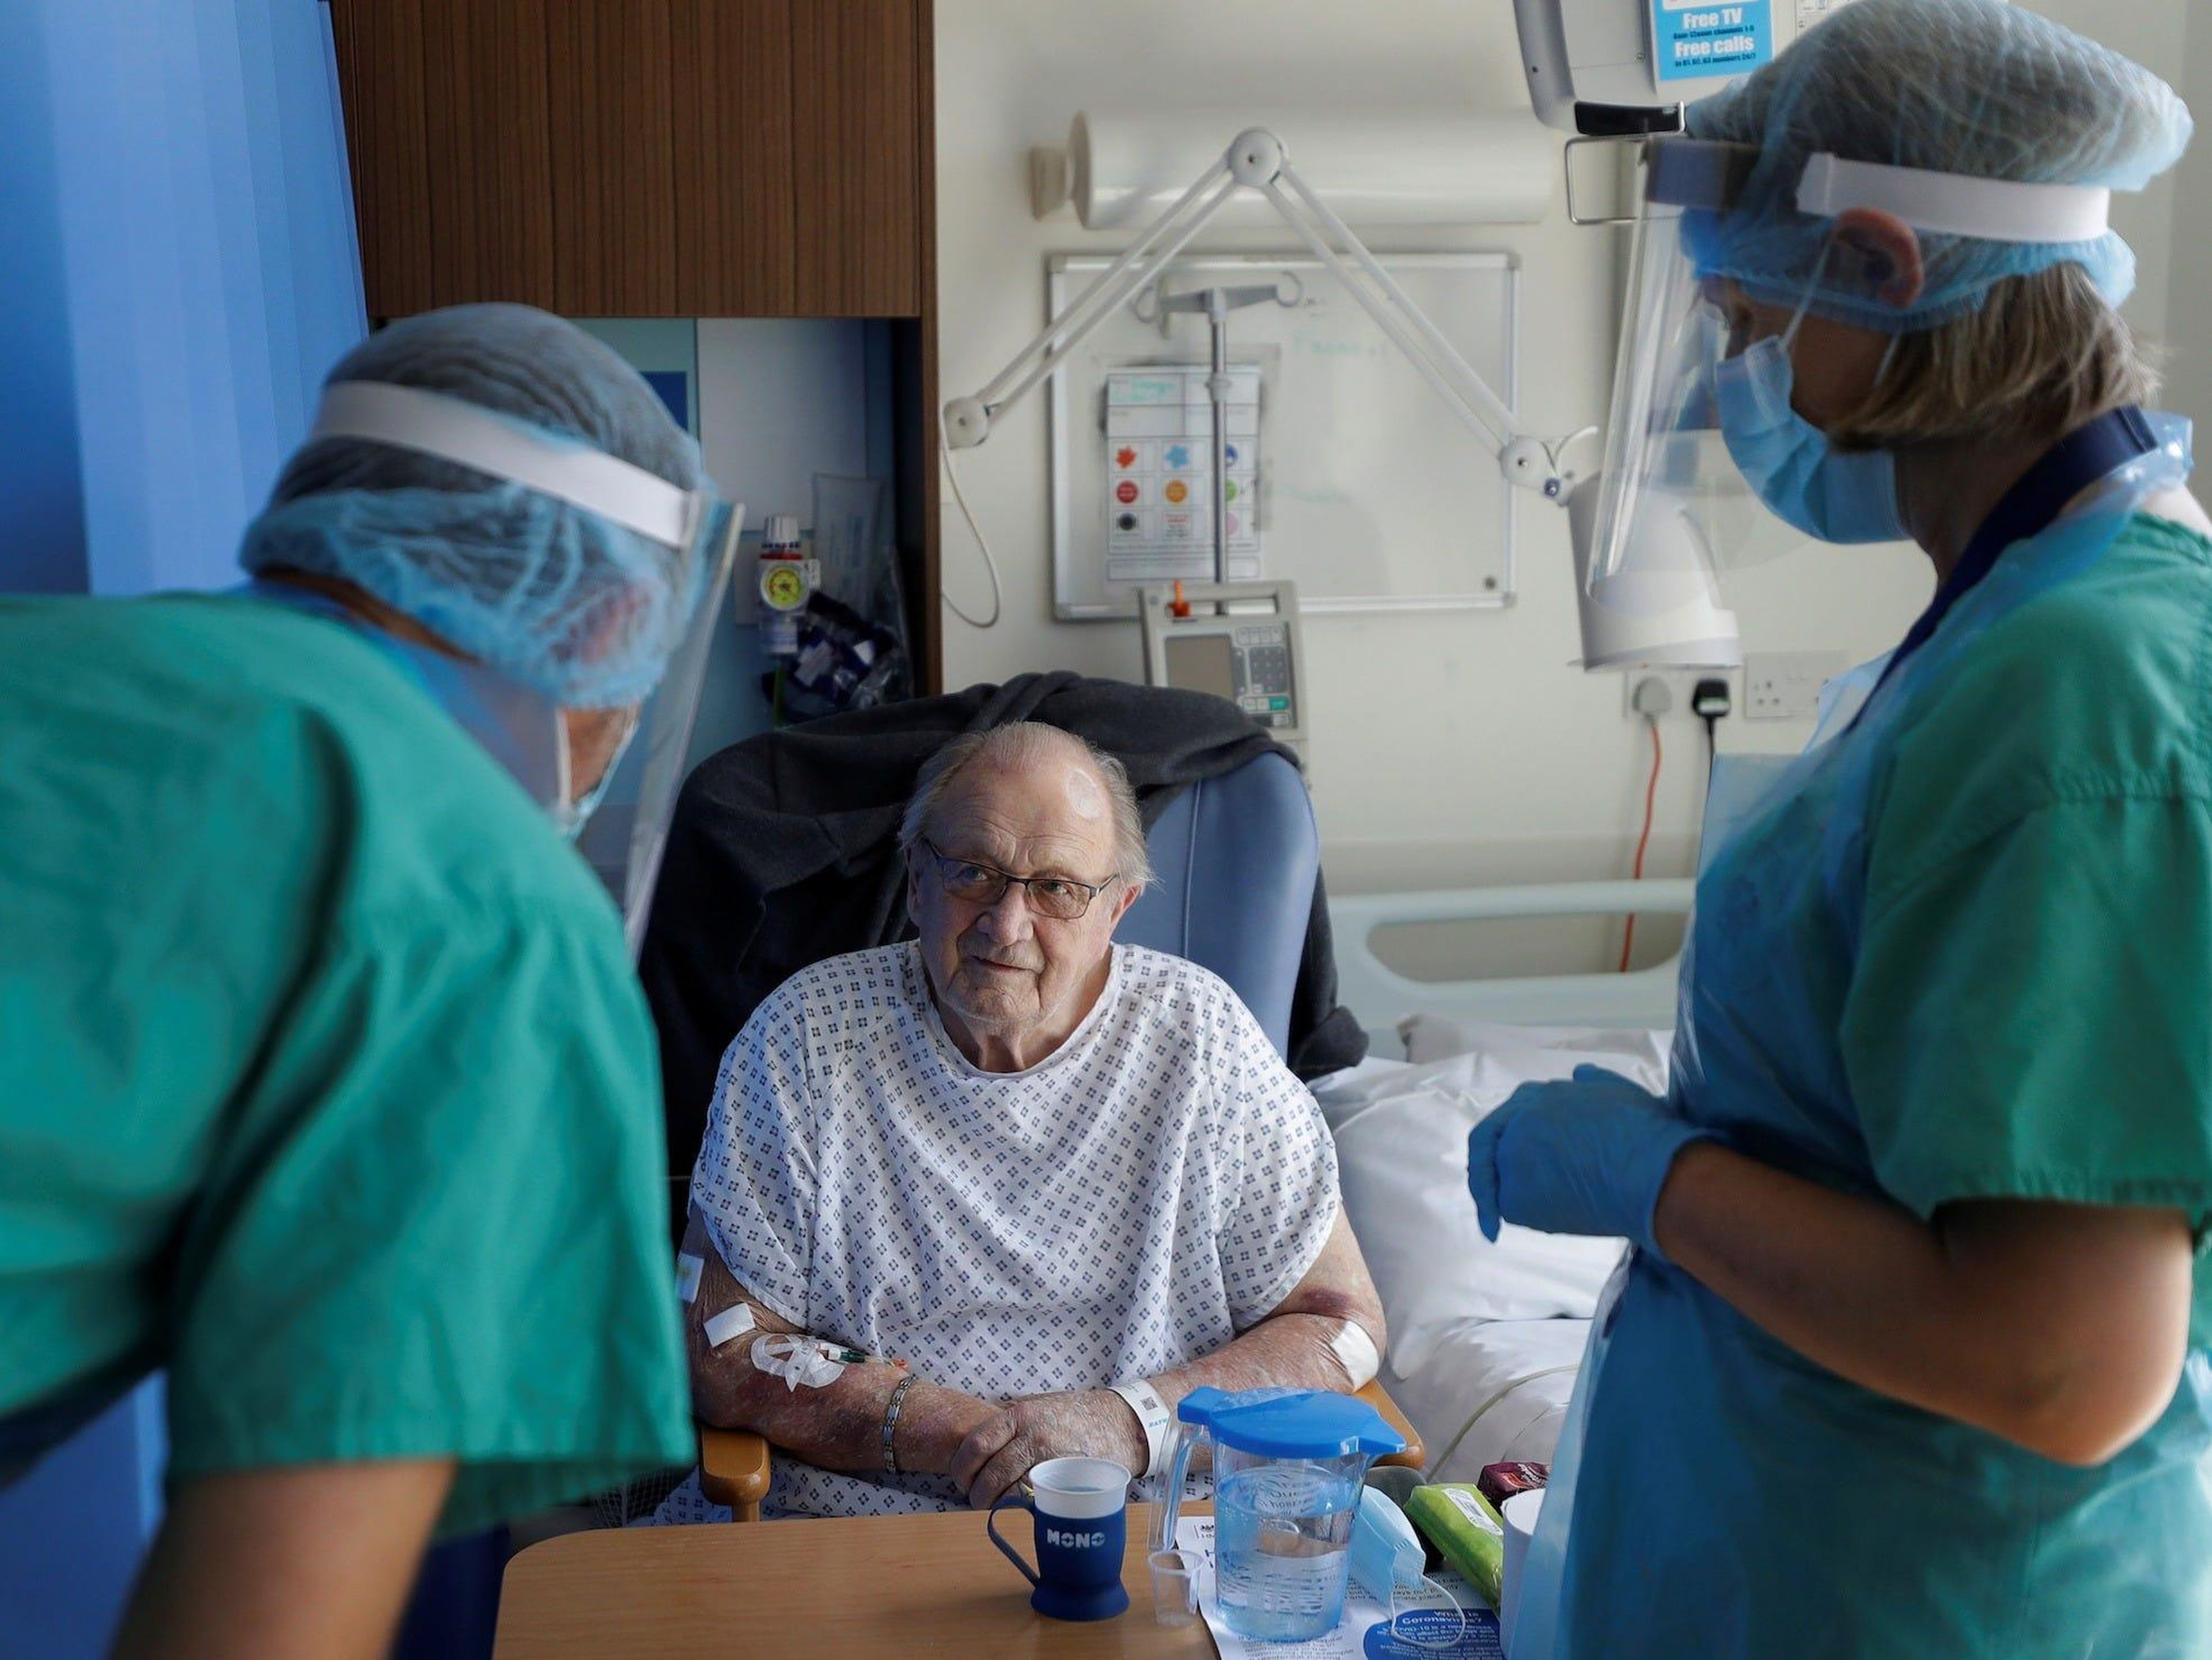 El paciente con coronavirus, George Gilbert, de 85 años de edad, que forma parte de un ensayo de un fármaco, es tratado en el hospital de Addenbrooke en Cambridge, Gran Bretaña, el 21 de mayo de 2020.